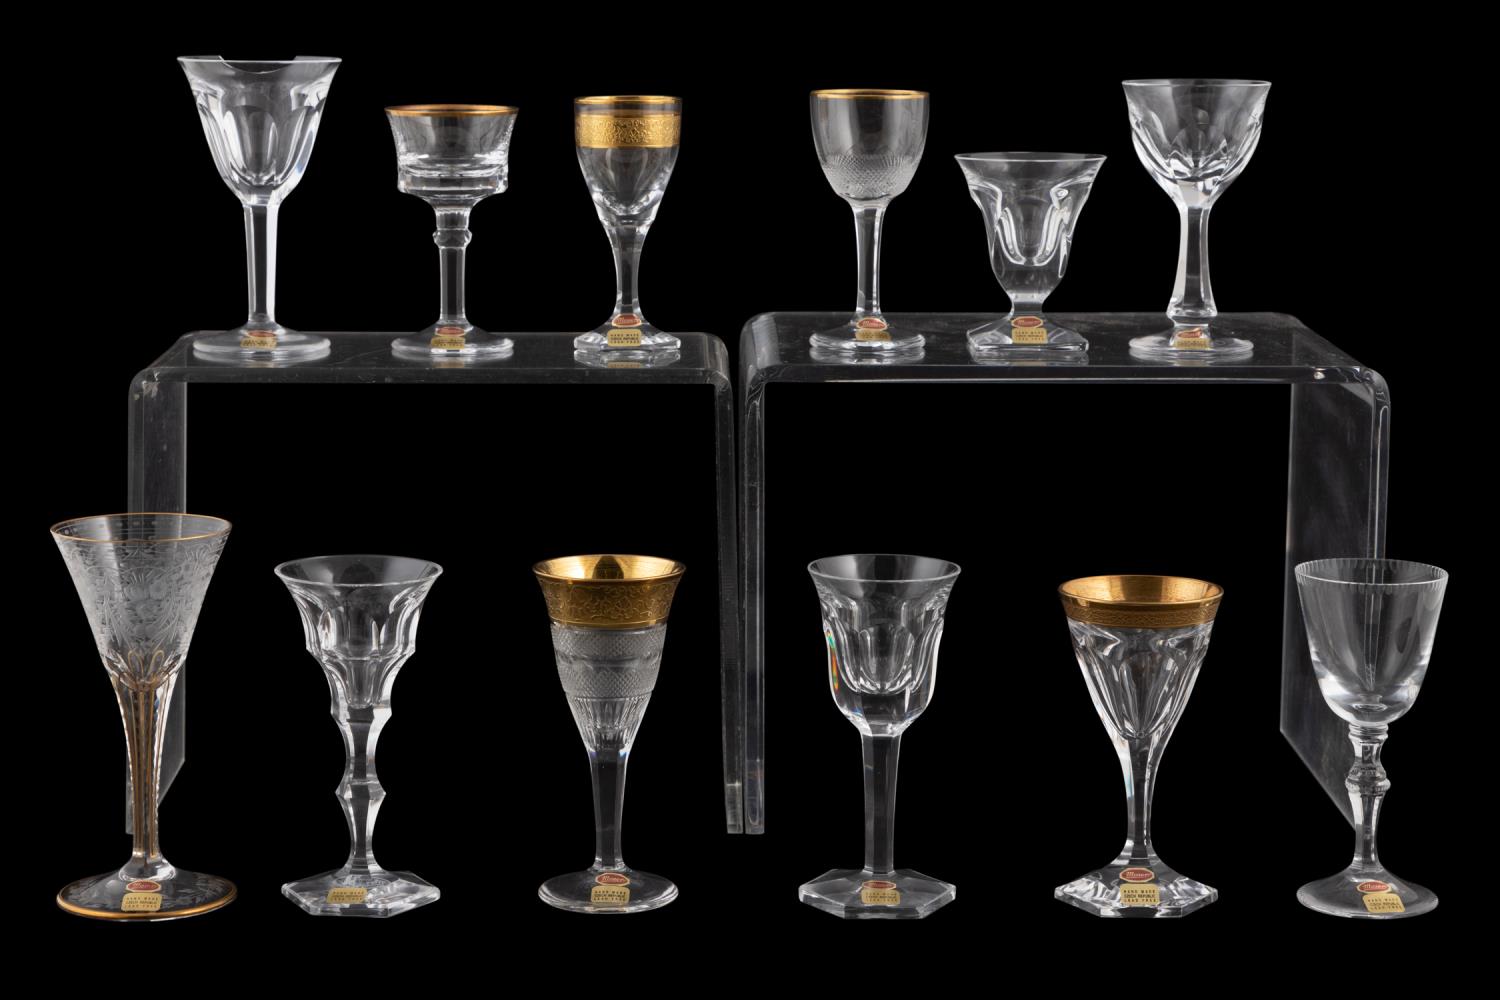 買蔵Moser glass collection 12pcs モーゼル グラスコレクション 12種セット 金彩 カット SPLENDID コペンハーゲン Melikoff マハラニ 等含む クリスタルガラス